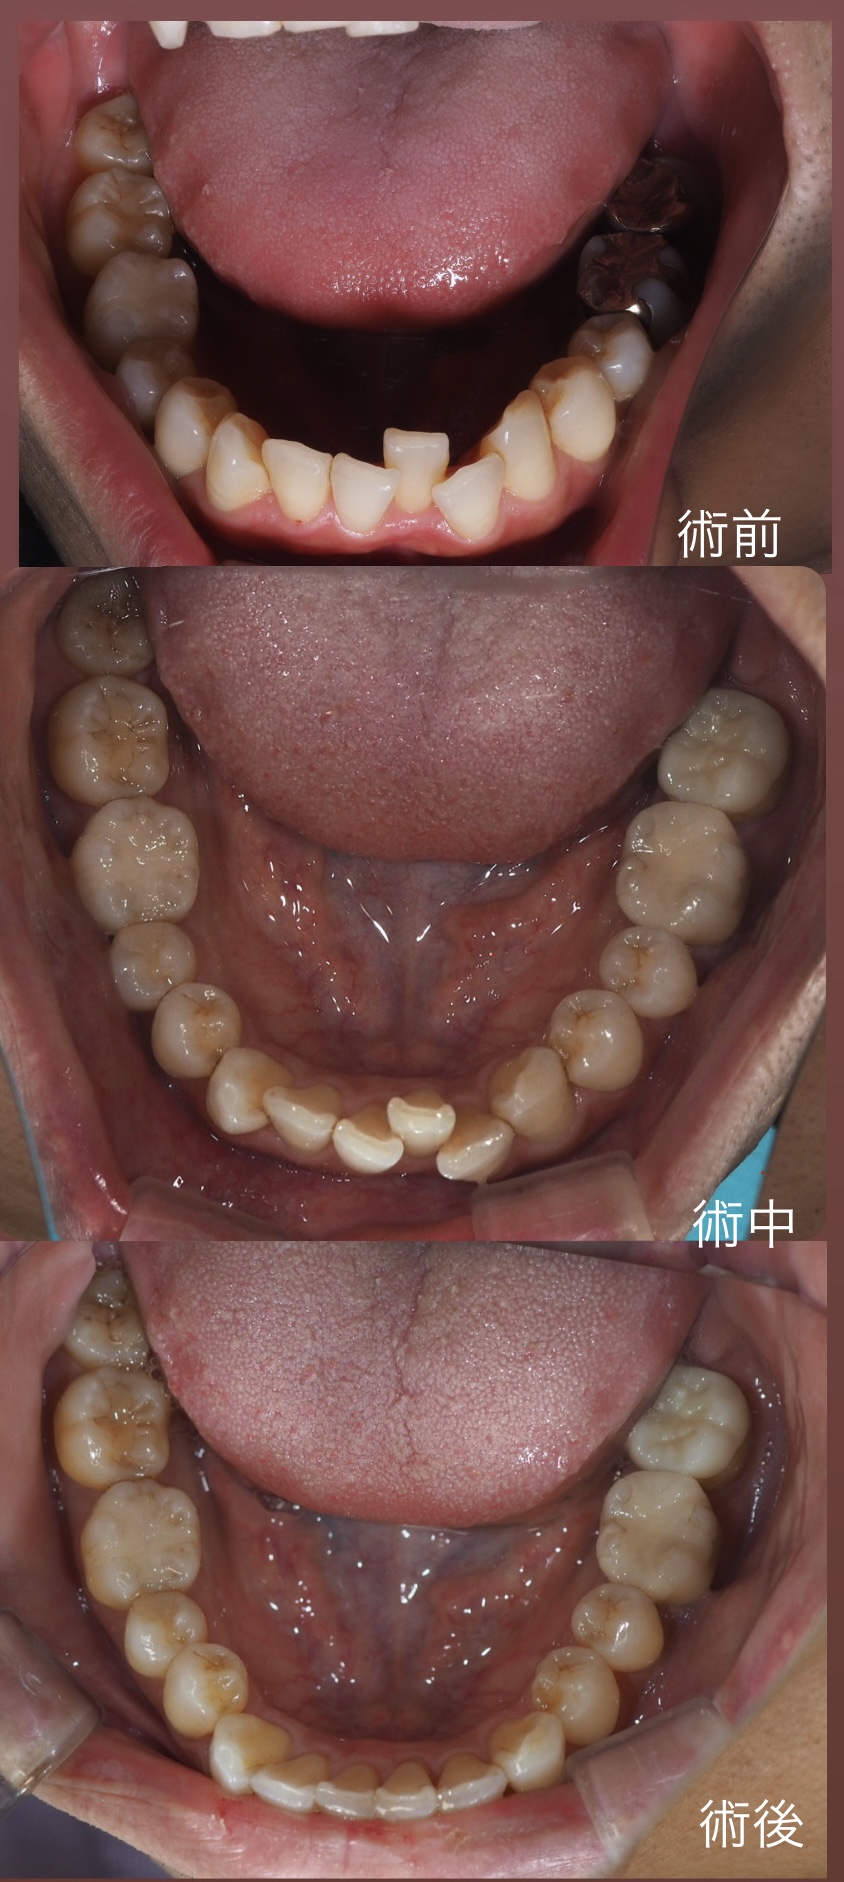 部分矯正について | 総合歯科治療の東京代々木駅前歯科・矯正歯科